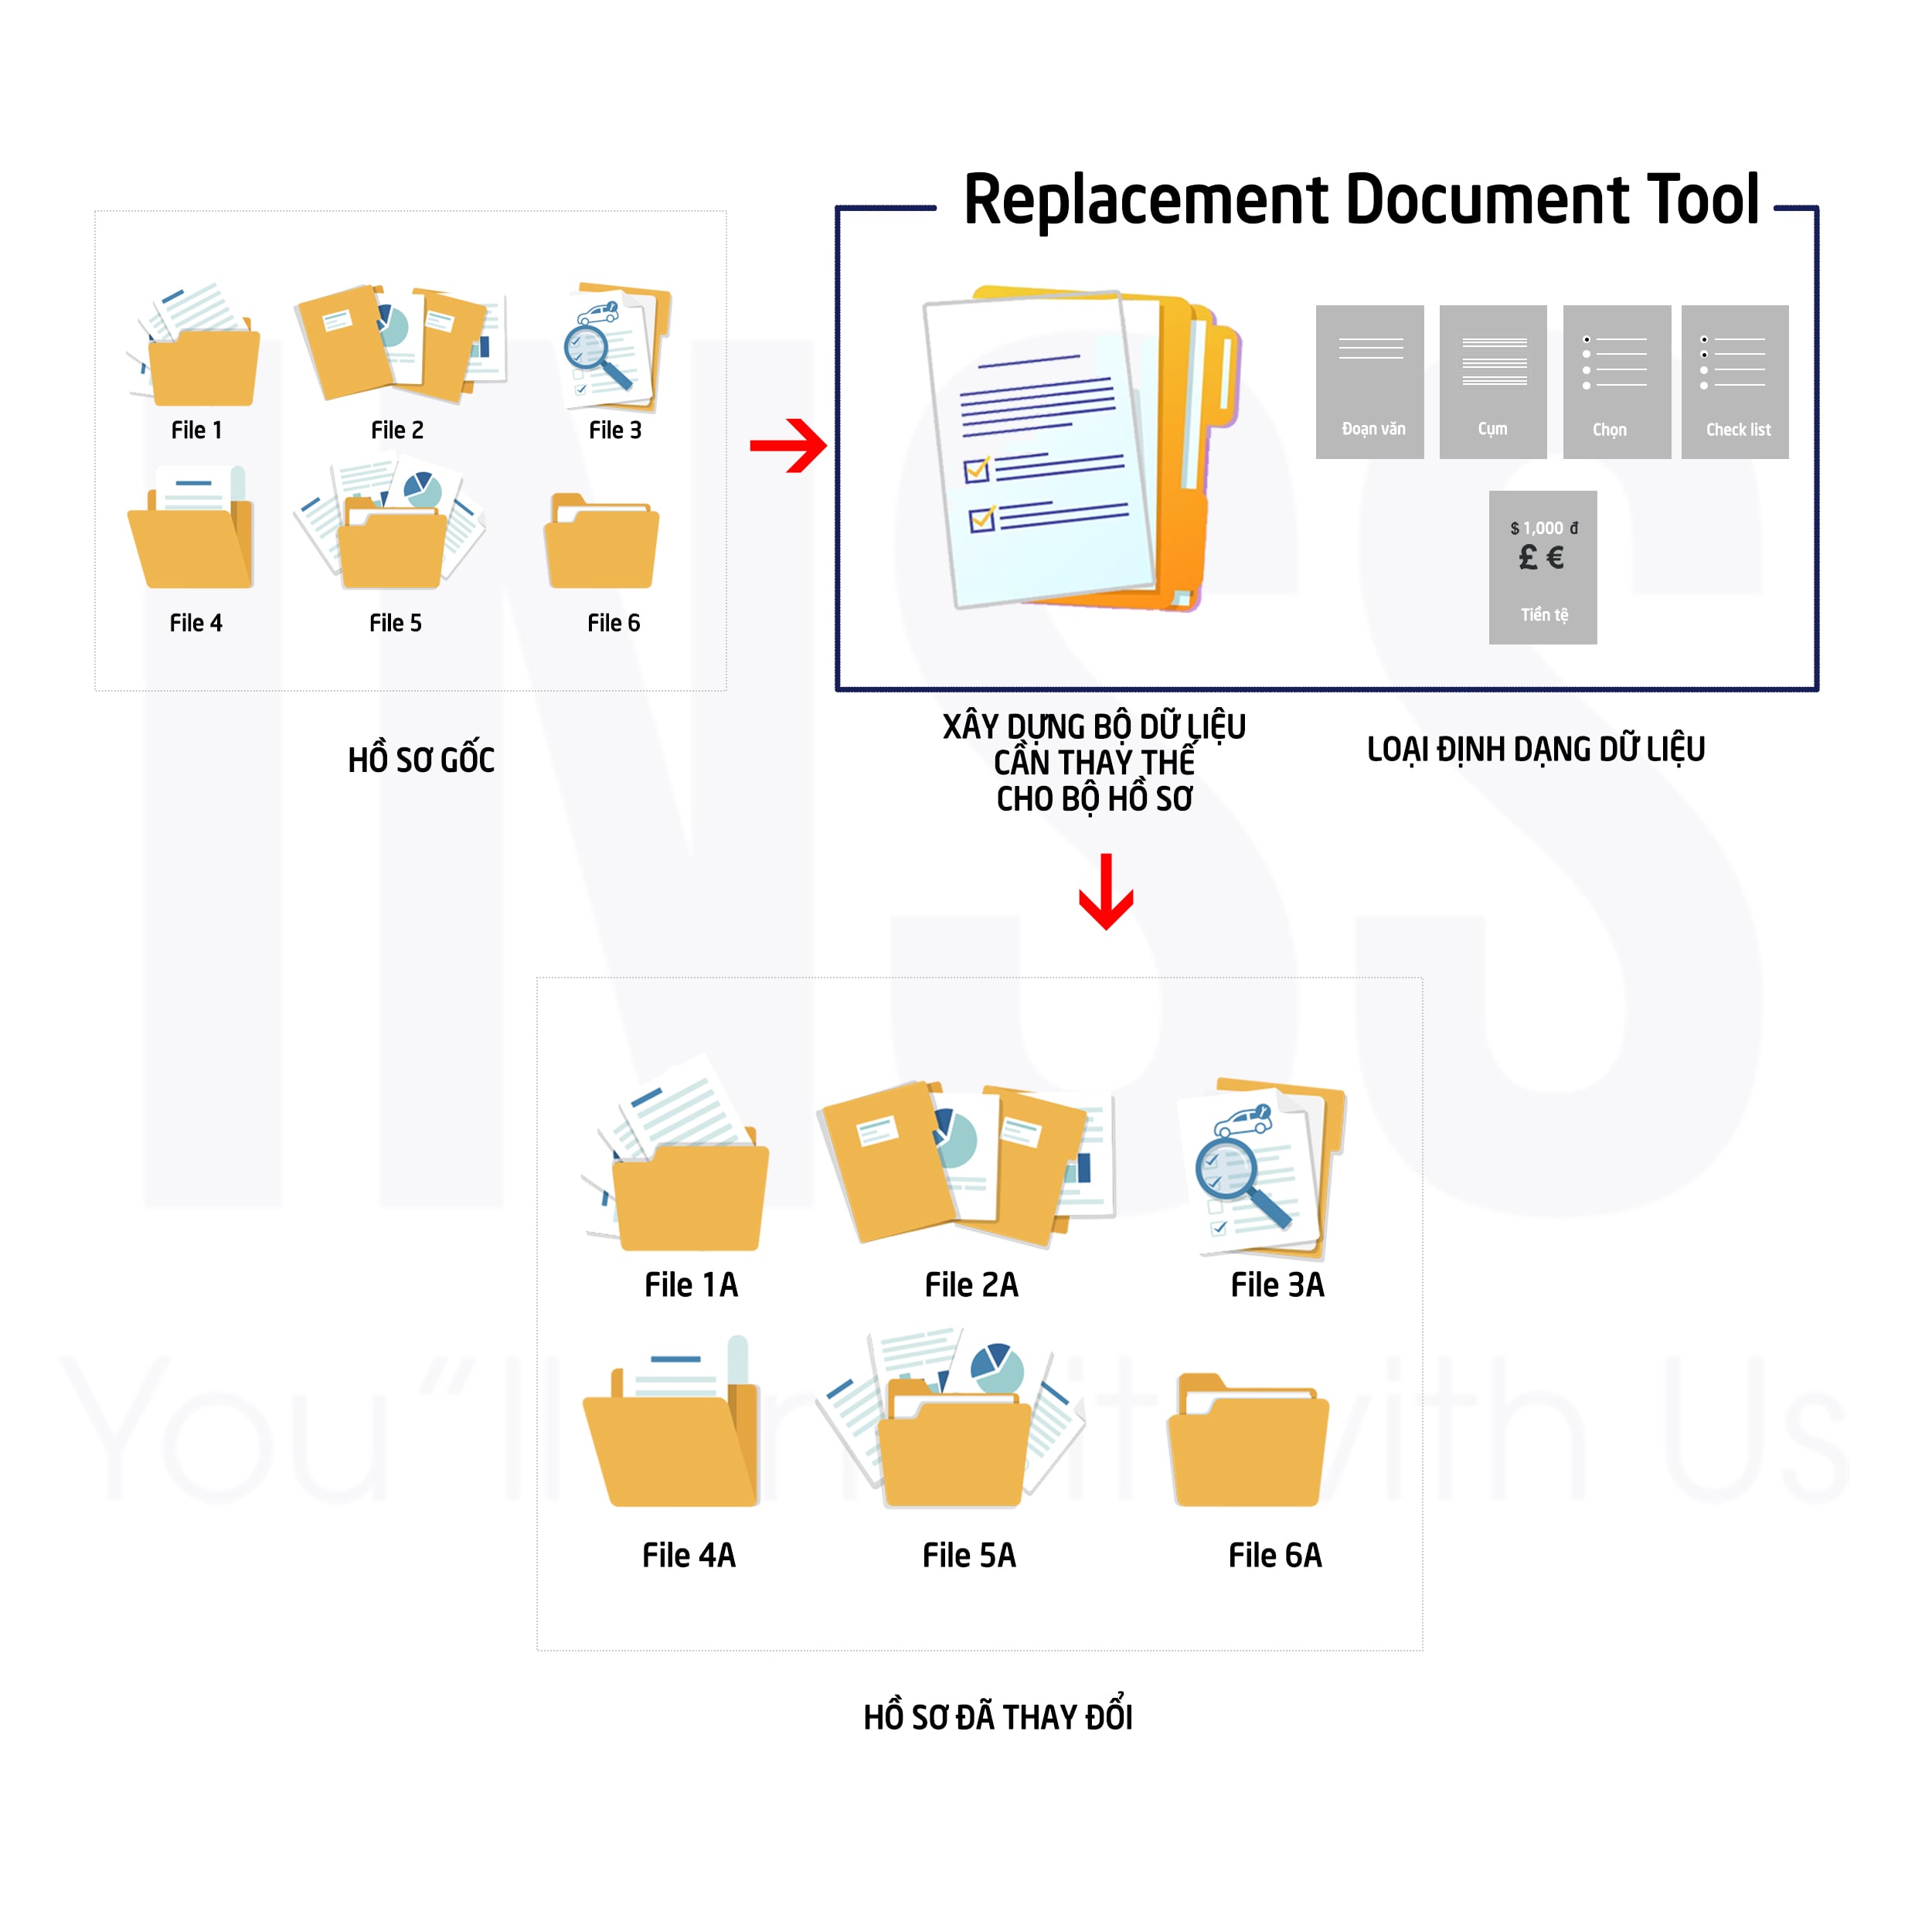 Replacement Document Tool - Hiệu Quả Cải Thiện Công Việc Quản Lý Văn Bản